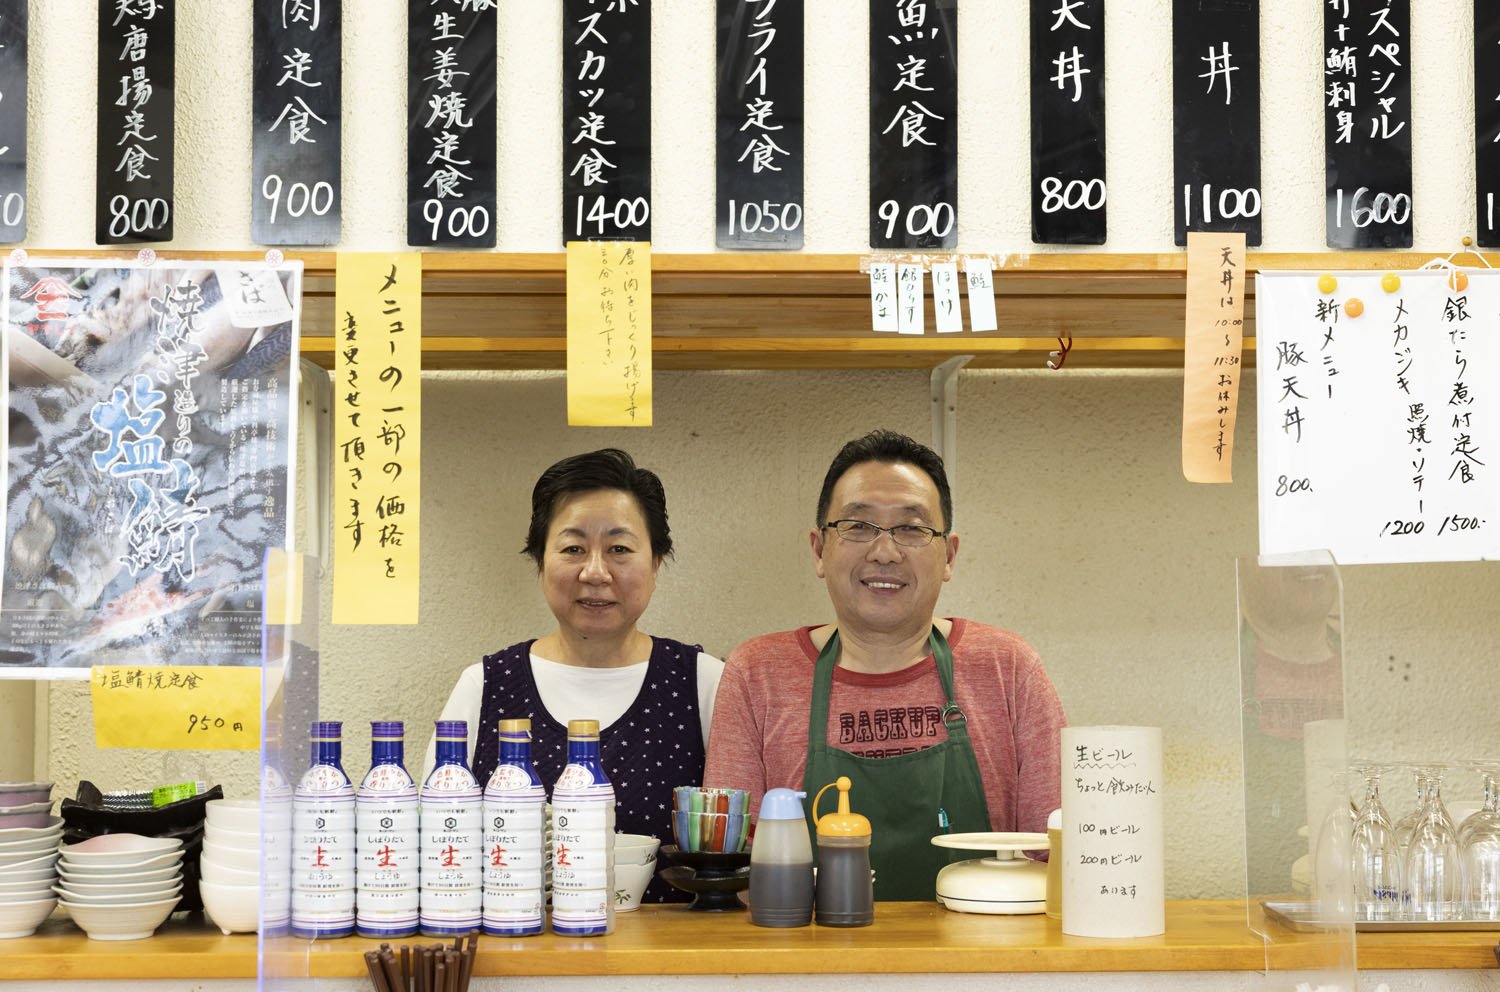 繁田さんと妻・則子さん。繁田さんは店を始める前、市場で競り人をやっていた。